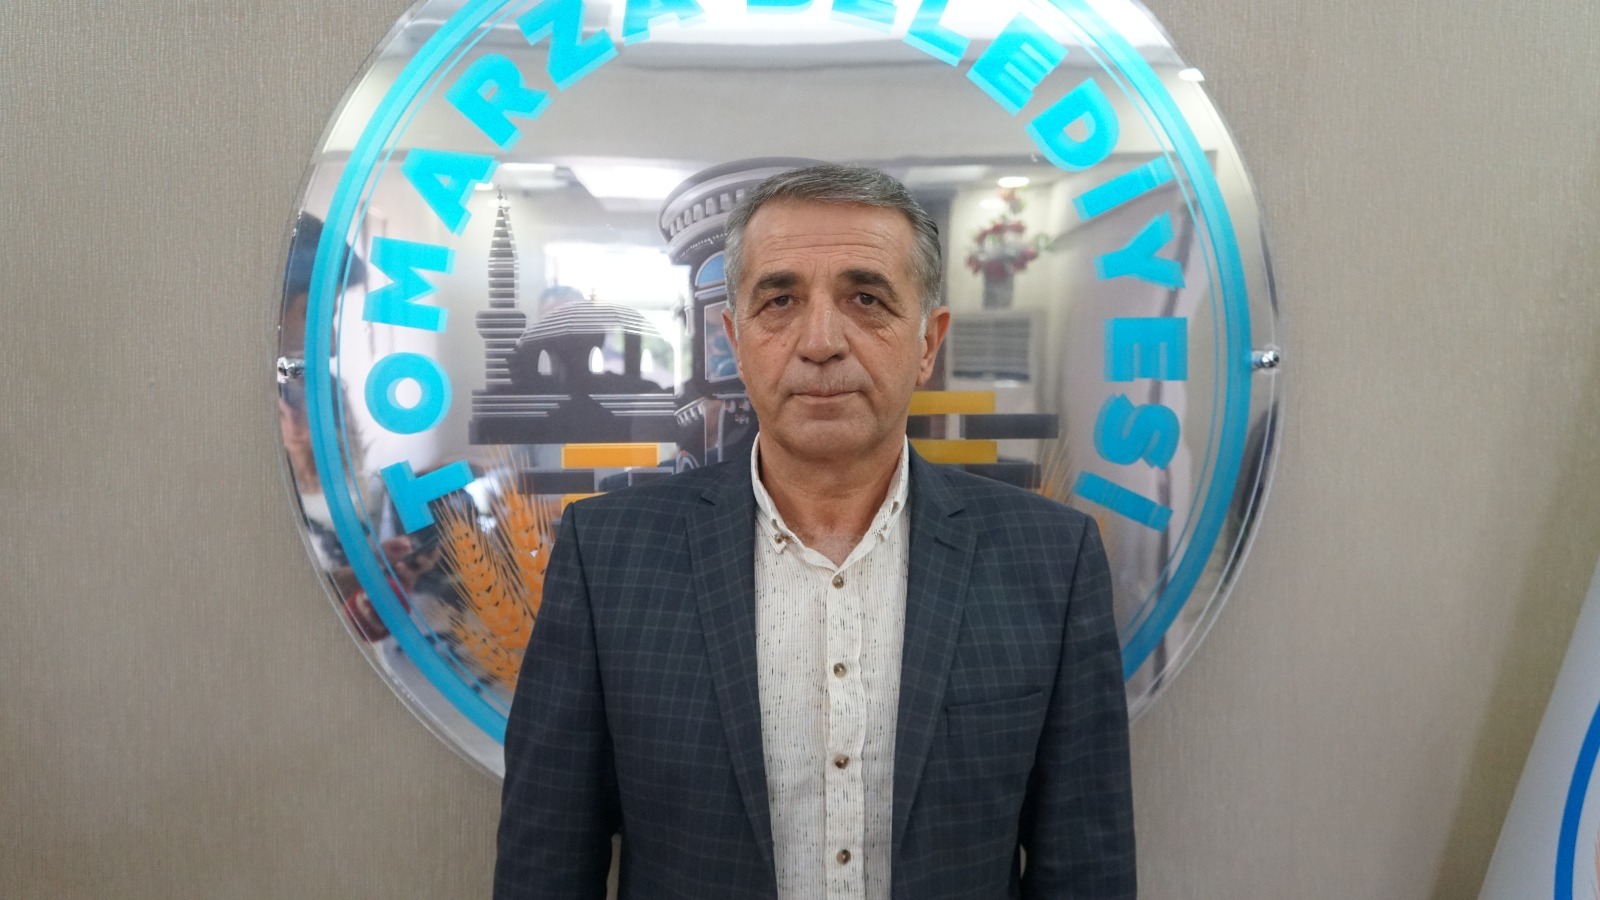 Tomarza Belediye Başkanı Koç, “Vatandaş istediğinde müdür ve başkan ile görüşerek sıkıntısını dile getirecek”